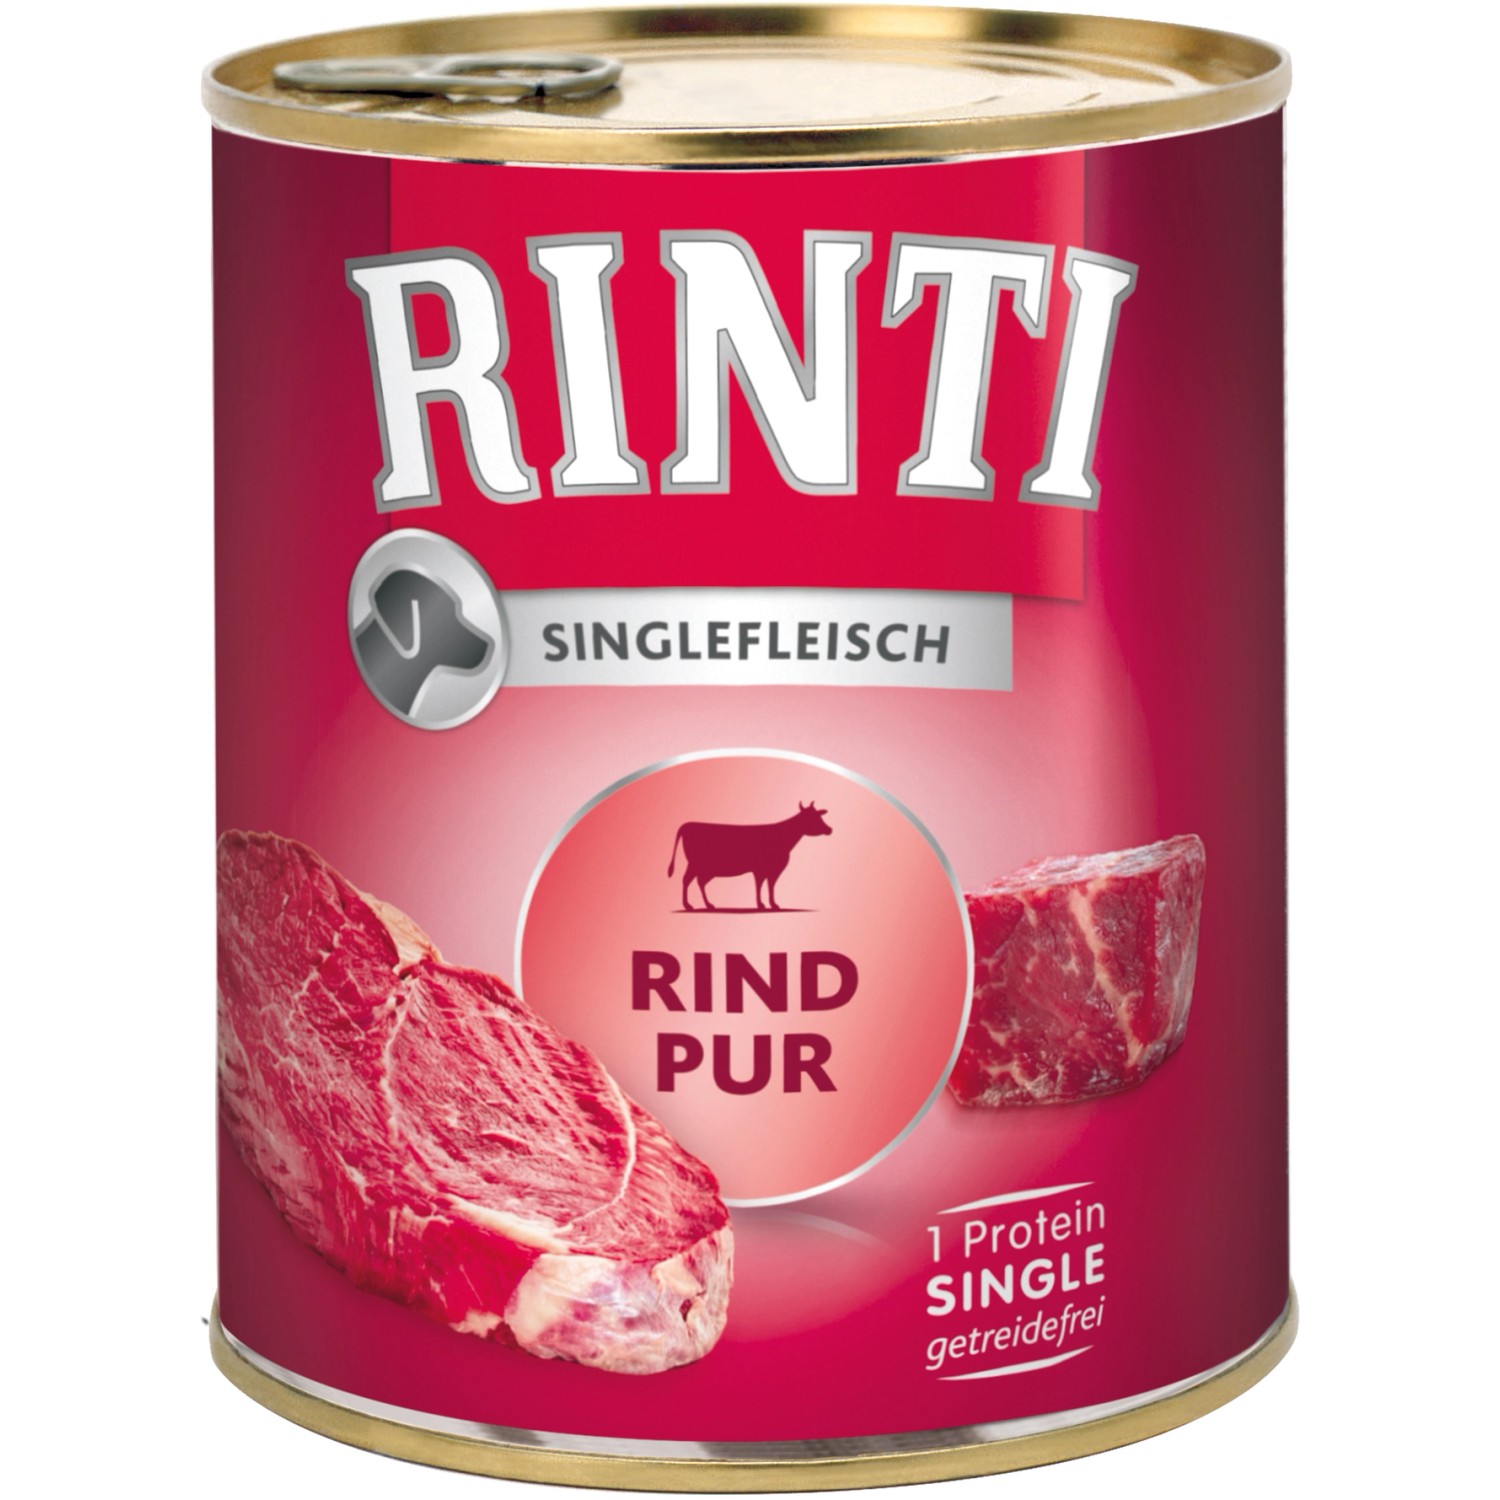 Rinti Hunde-Nassfutter Singlefleisch Rind 800 g